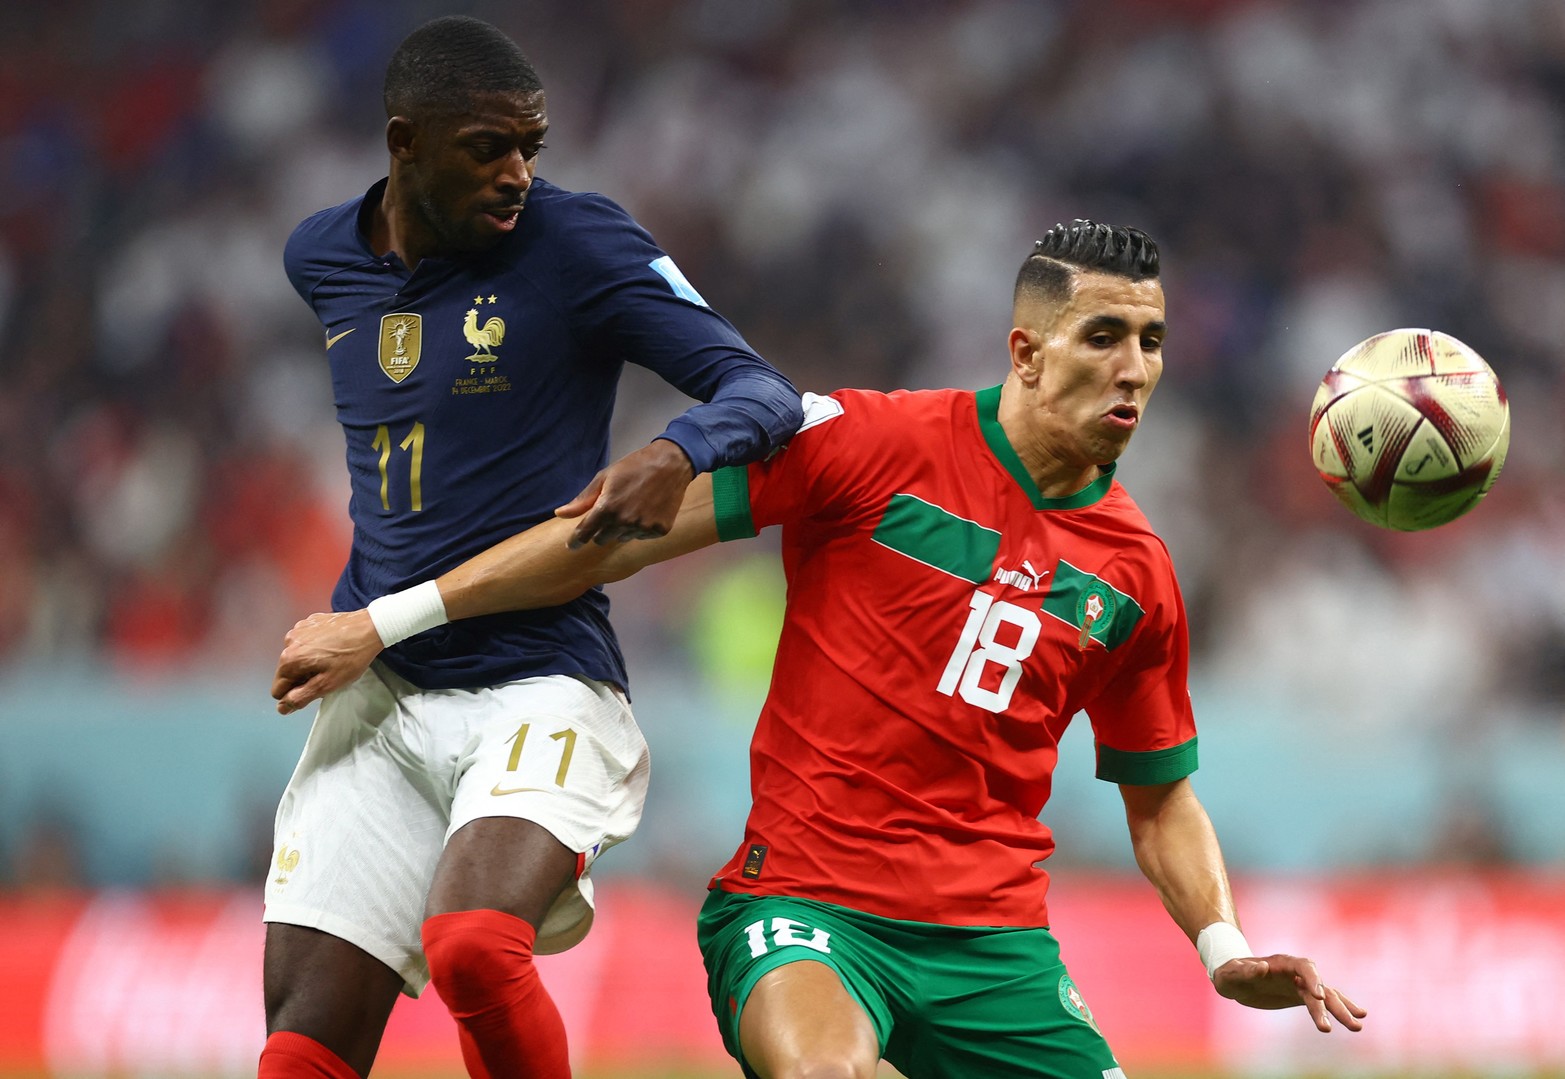 Francia venció a Marruecos y será el rival de Argentina en la final de la Copa del Mundo. El actual campeón se impuso por 2 a 0 a la gran revelación del torneo y definirá el título con el equipo dirigido por Lionel Scaloni.